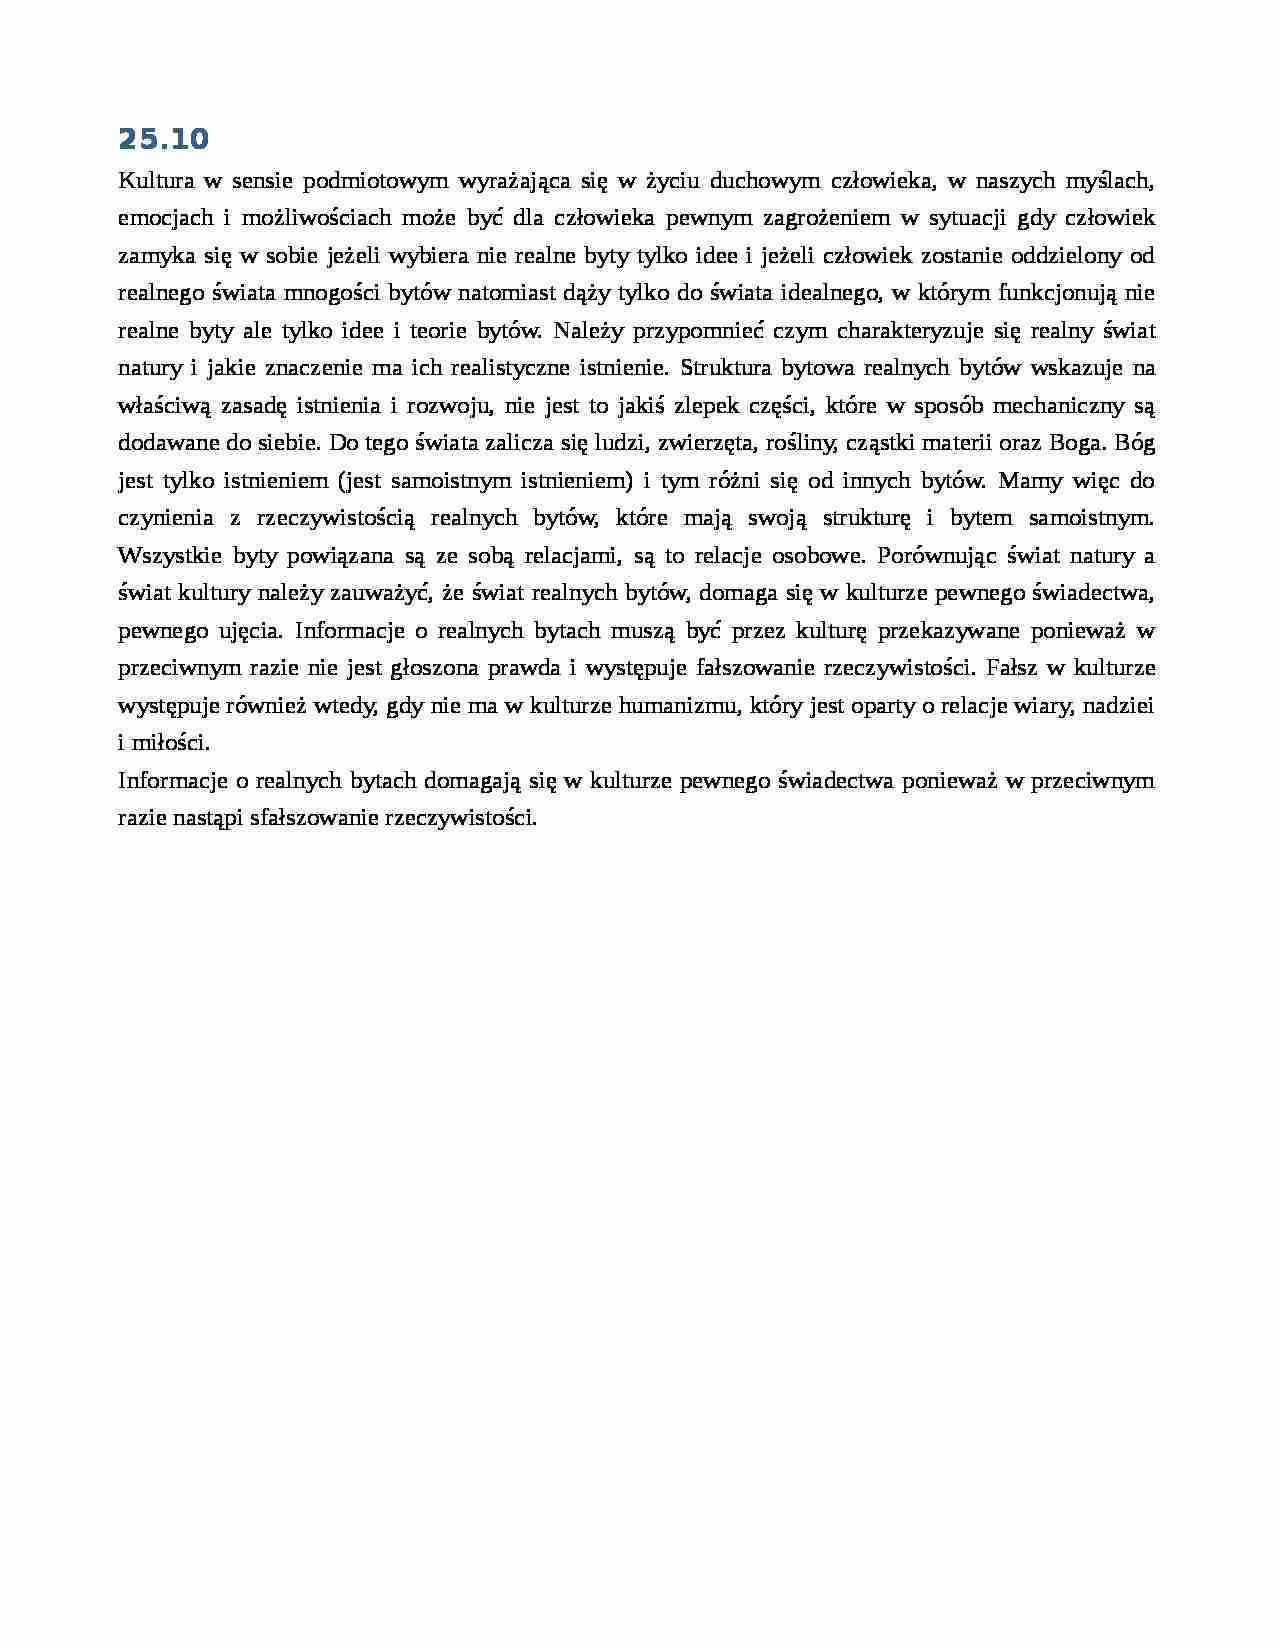 Filozofia kultury - notatki z wykładu 3 z dn. 25.10.2012 r. - strona 1